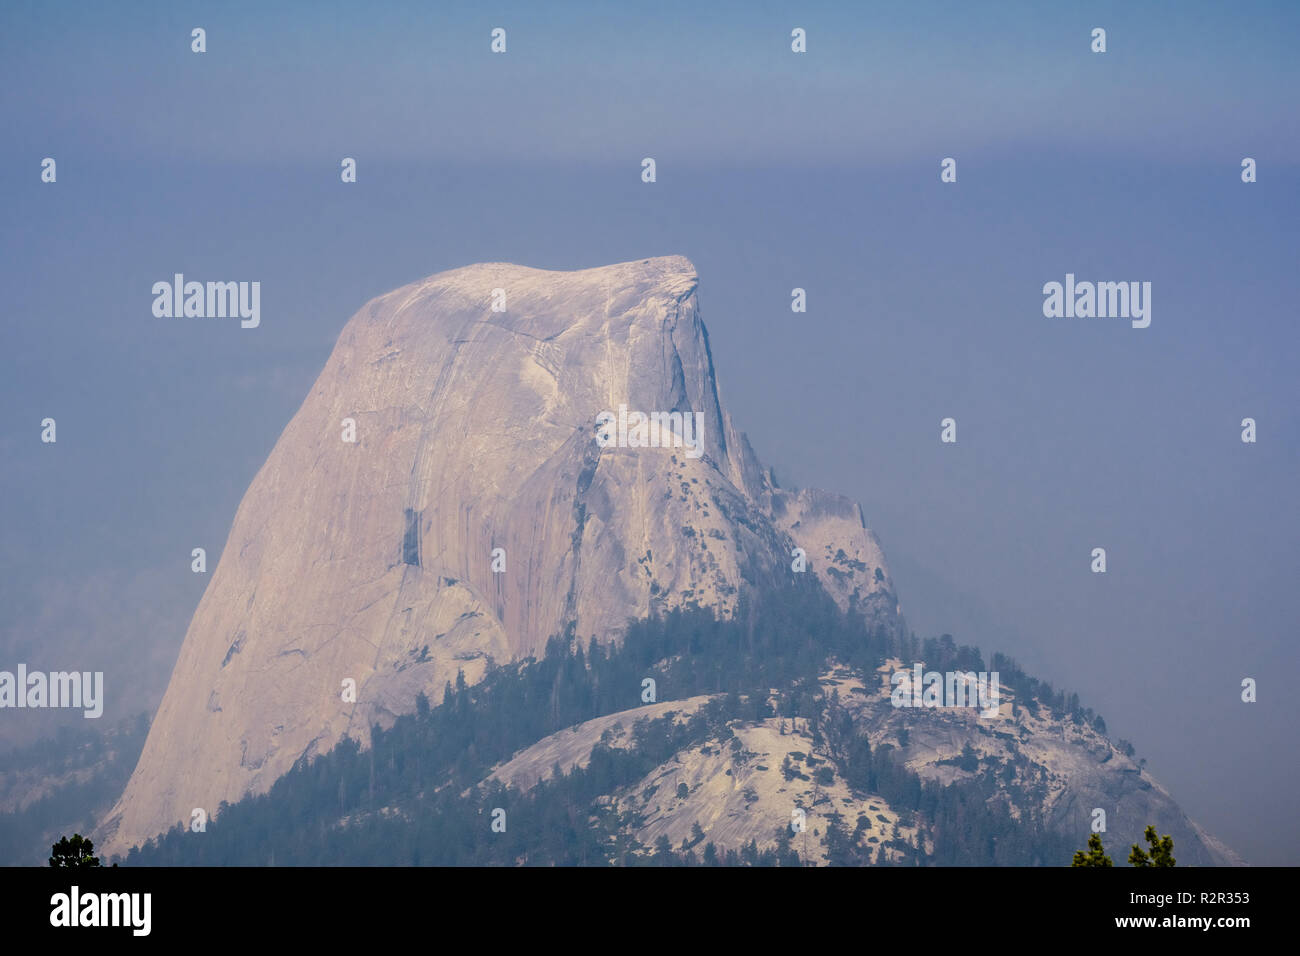 Blick auf den Half Dome an einem Tag mit schlechter Sicht aufgrund der Rauchentwicklung aus dem Ferguson Brand, Yosemite National Park, Kalifornien Stockfoto